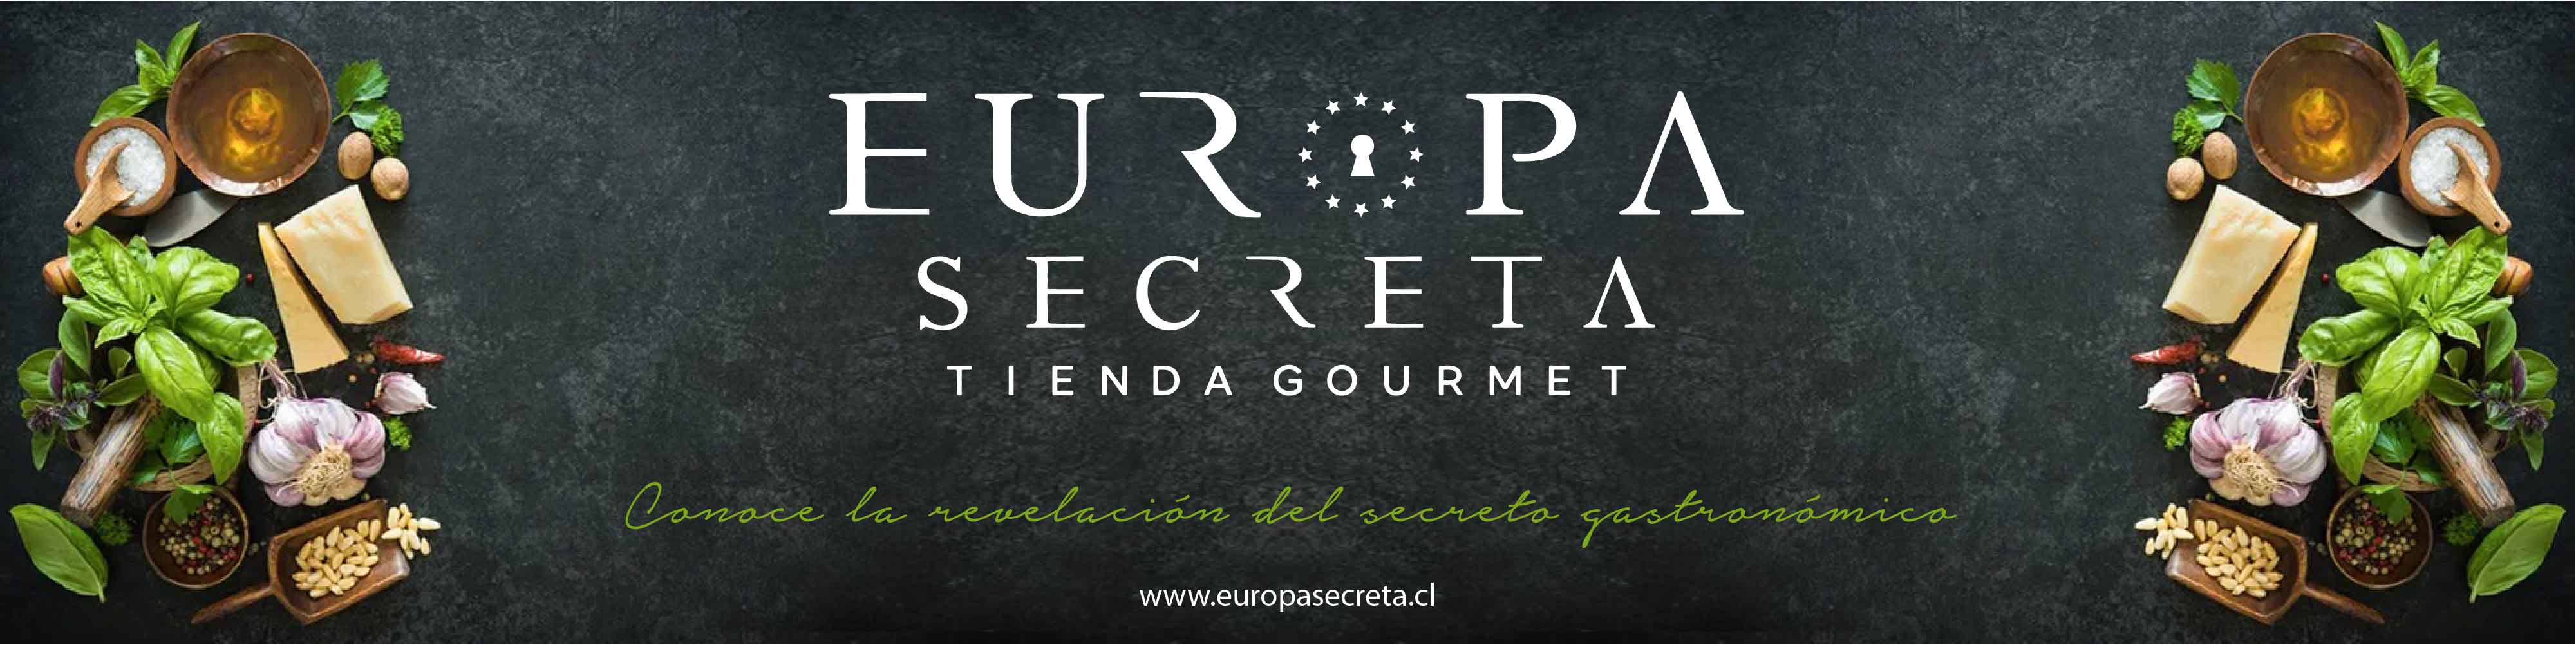 Europa Secreta